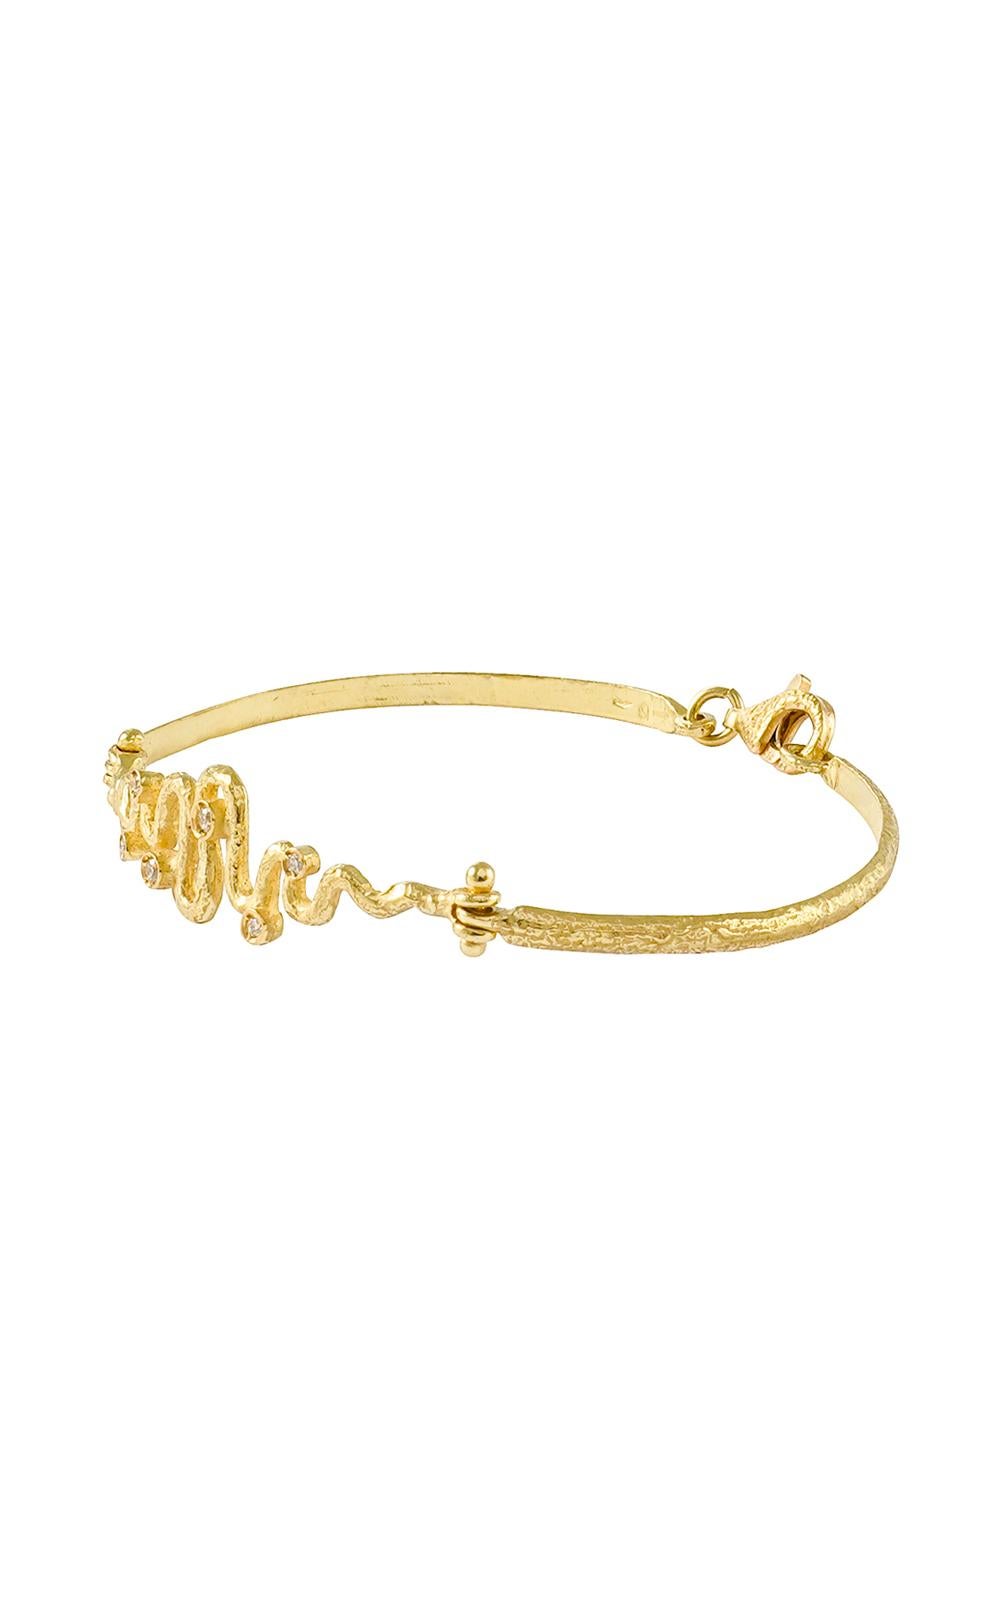 Bracelet moderne en or jaune satiné agrémenté de  Diamants, issus de la collection Serpenti de Sacchi, fabriqués à la main selon la technique du moulage à la cire perdue.

Le moulage à la cire perdue, l'une des plus anciennes techniques de création